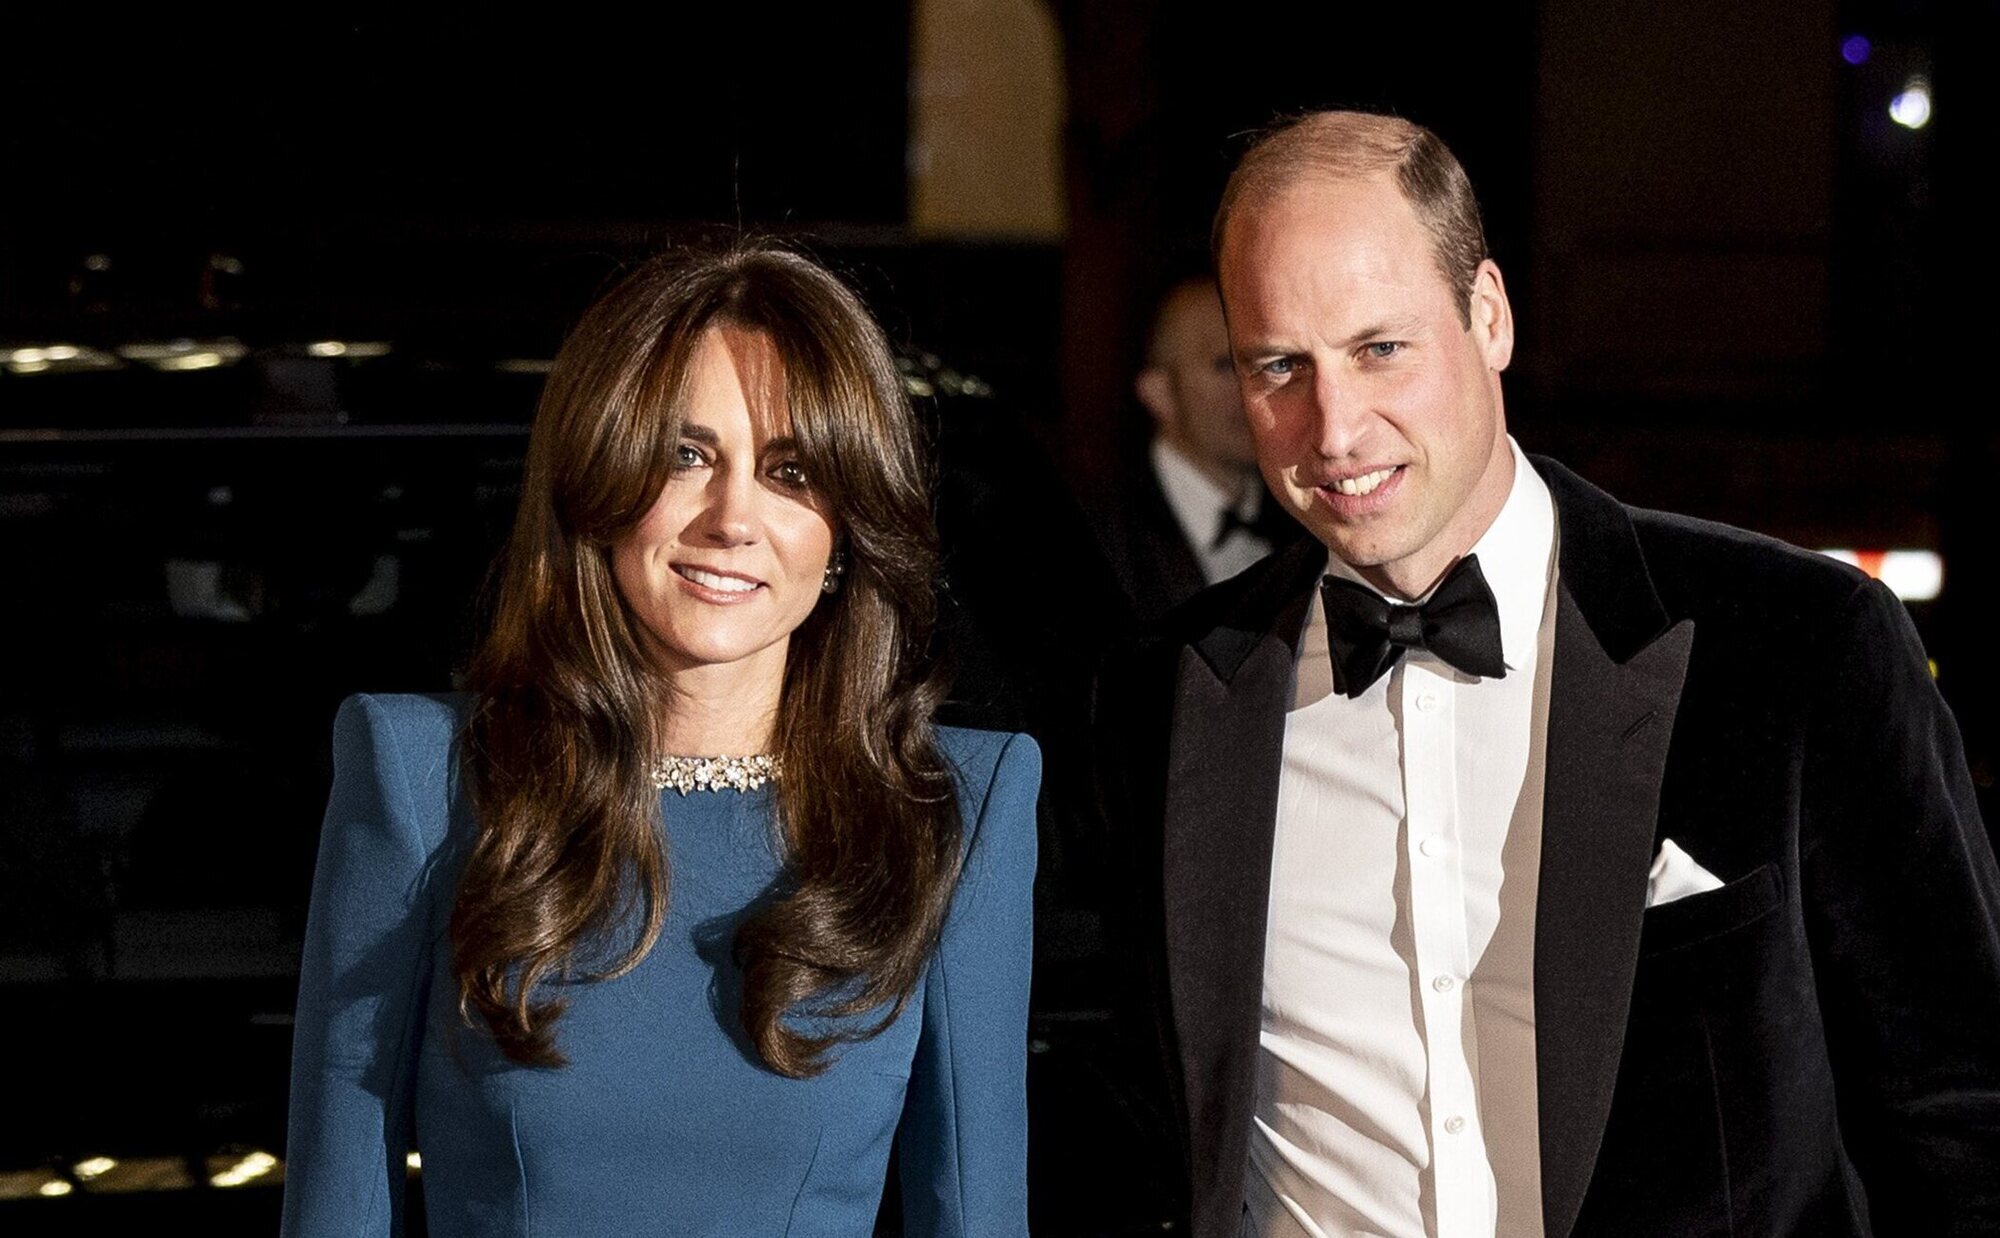 La ruptura de la tradición que preparan el Príncipe Guillermo y Kate Middleton con el Príncipe George